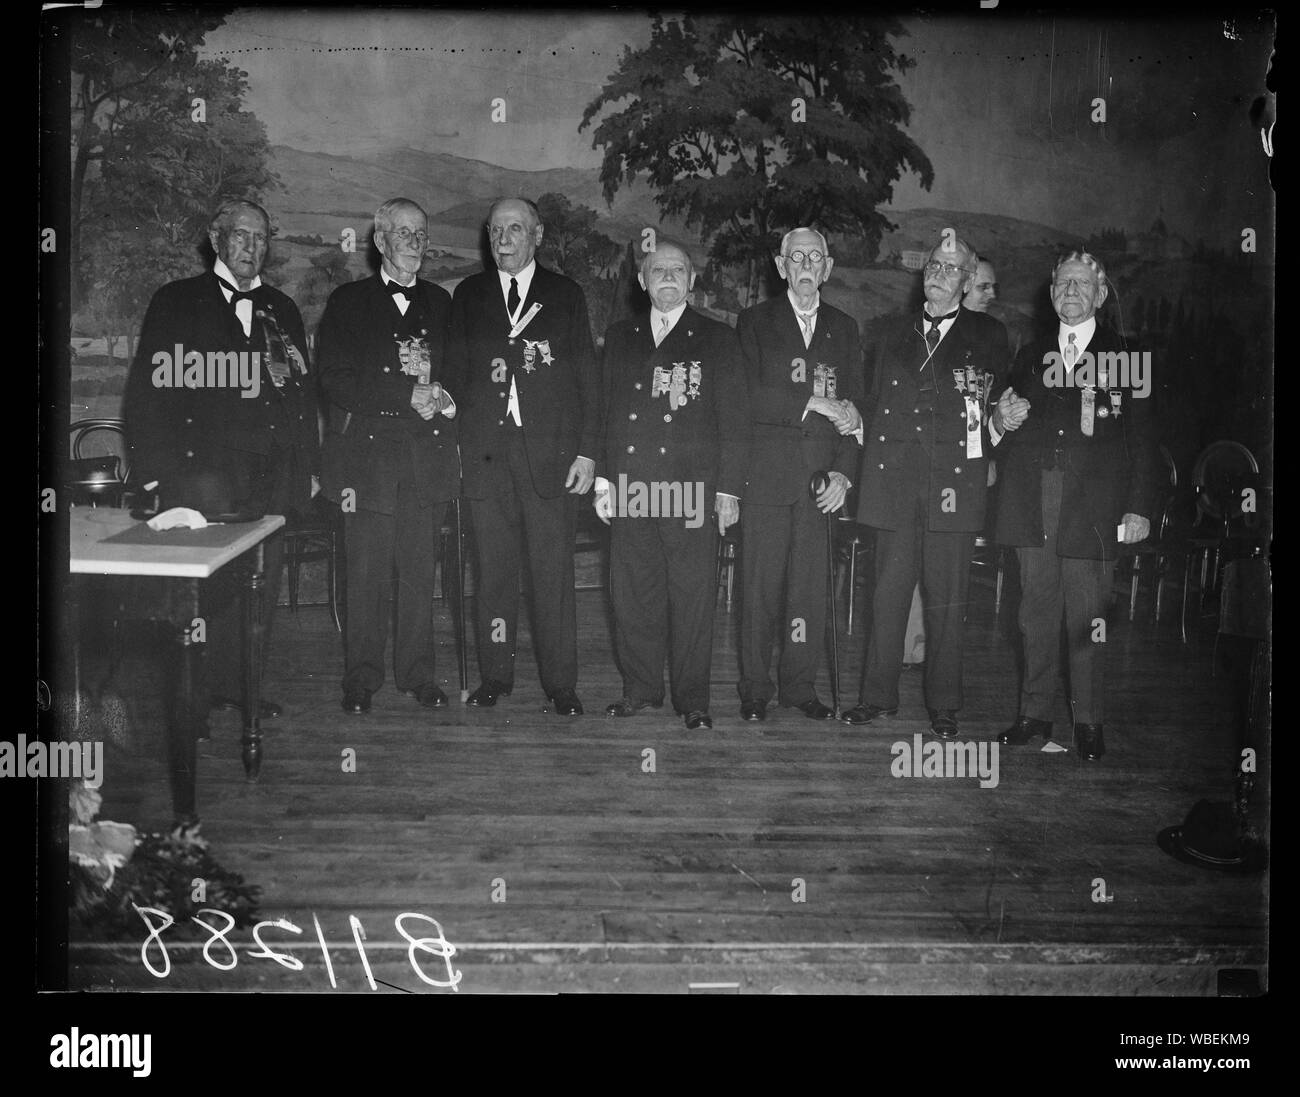 G.A.R. Il comandante in capo Ruhe e personale, Washington, D.C. Sett. 24. La foto mostra, da sinistra a destra James W. Willett di Tama, La. giudicare l'avvocato generale; Oley Nelson di Slater, Ia. pensionati commander-in-chief C.H. Wm. Ruhe di Wilkinsburg, Pa.; Thomas Ambrogio di Chicago, Ill., Junior Vice comandante; John M. Kline di Washington. D.C.; George H. Pounder di Ft. Atkinson, Wis. capo del personale; e Robert M. Rownd di Ripley, N.Y. L Ispettore Generale Abstract/medio: 1, negativo : vetro ; 4 x 5 in. o più piccolo Foto Stock